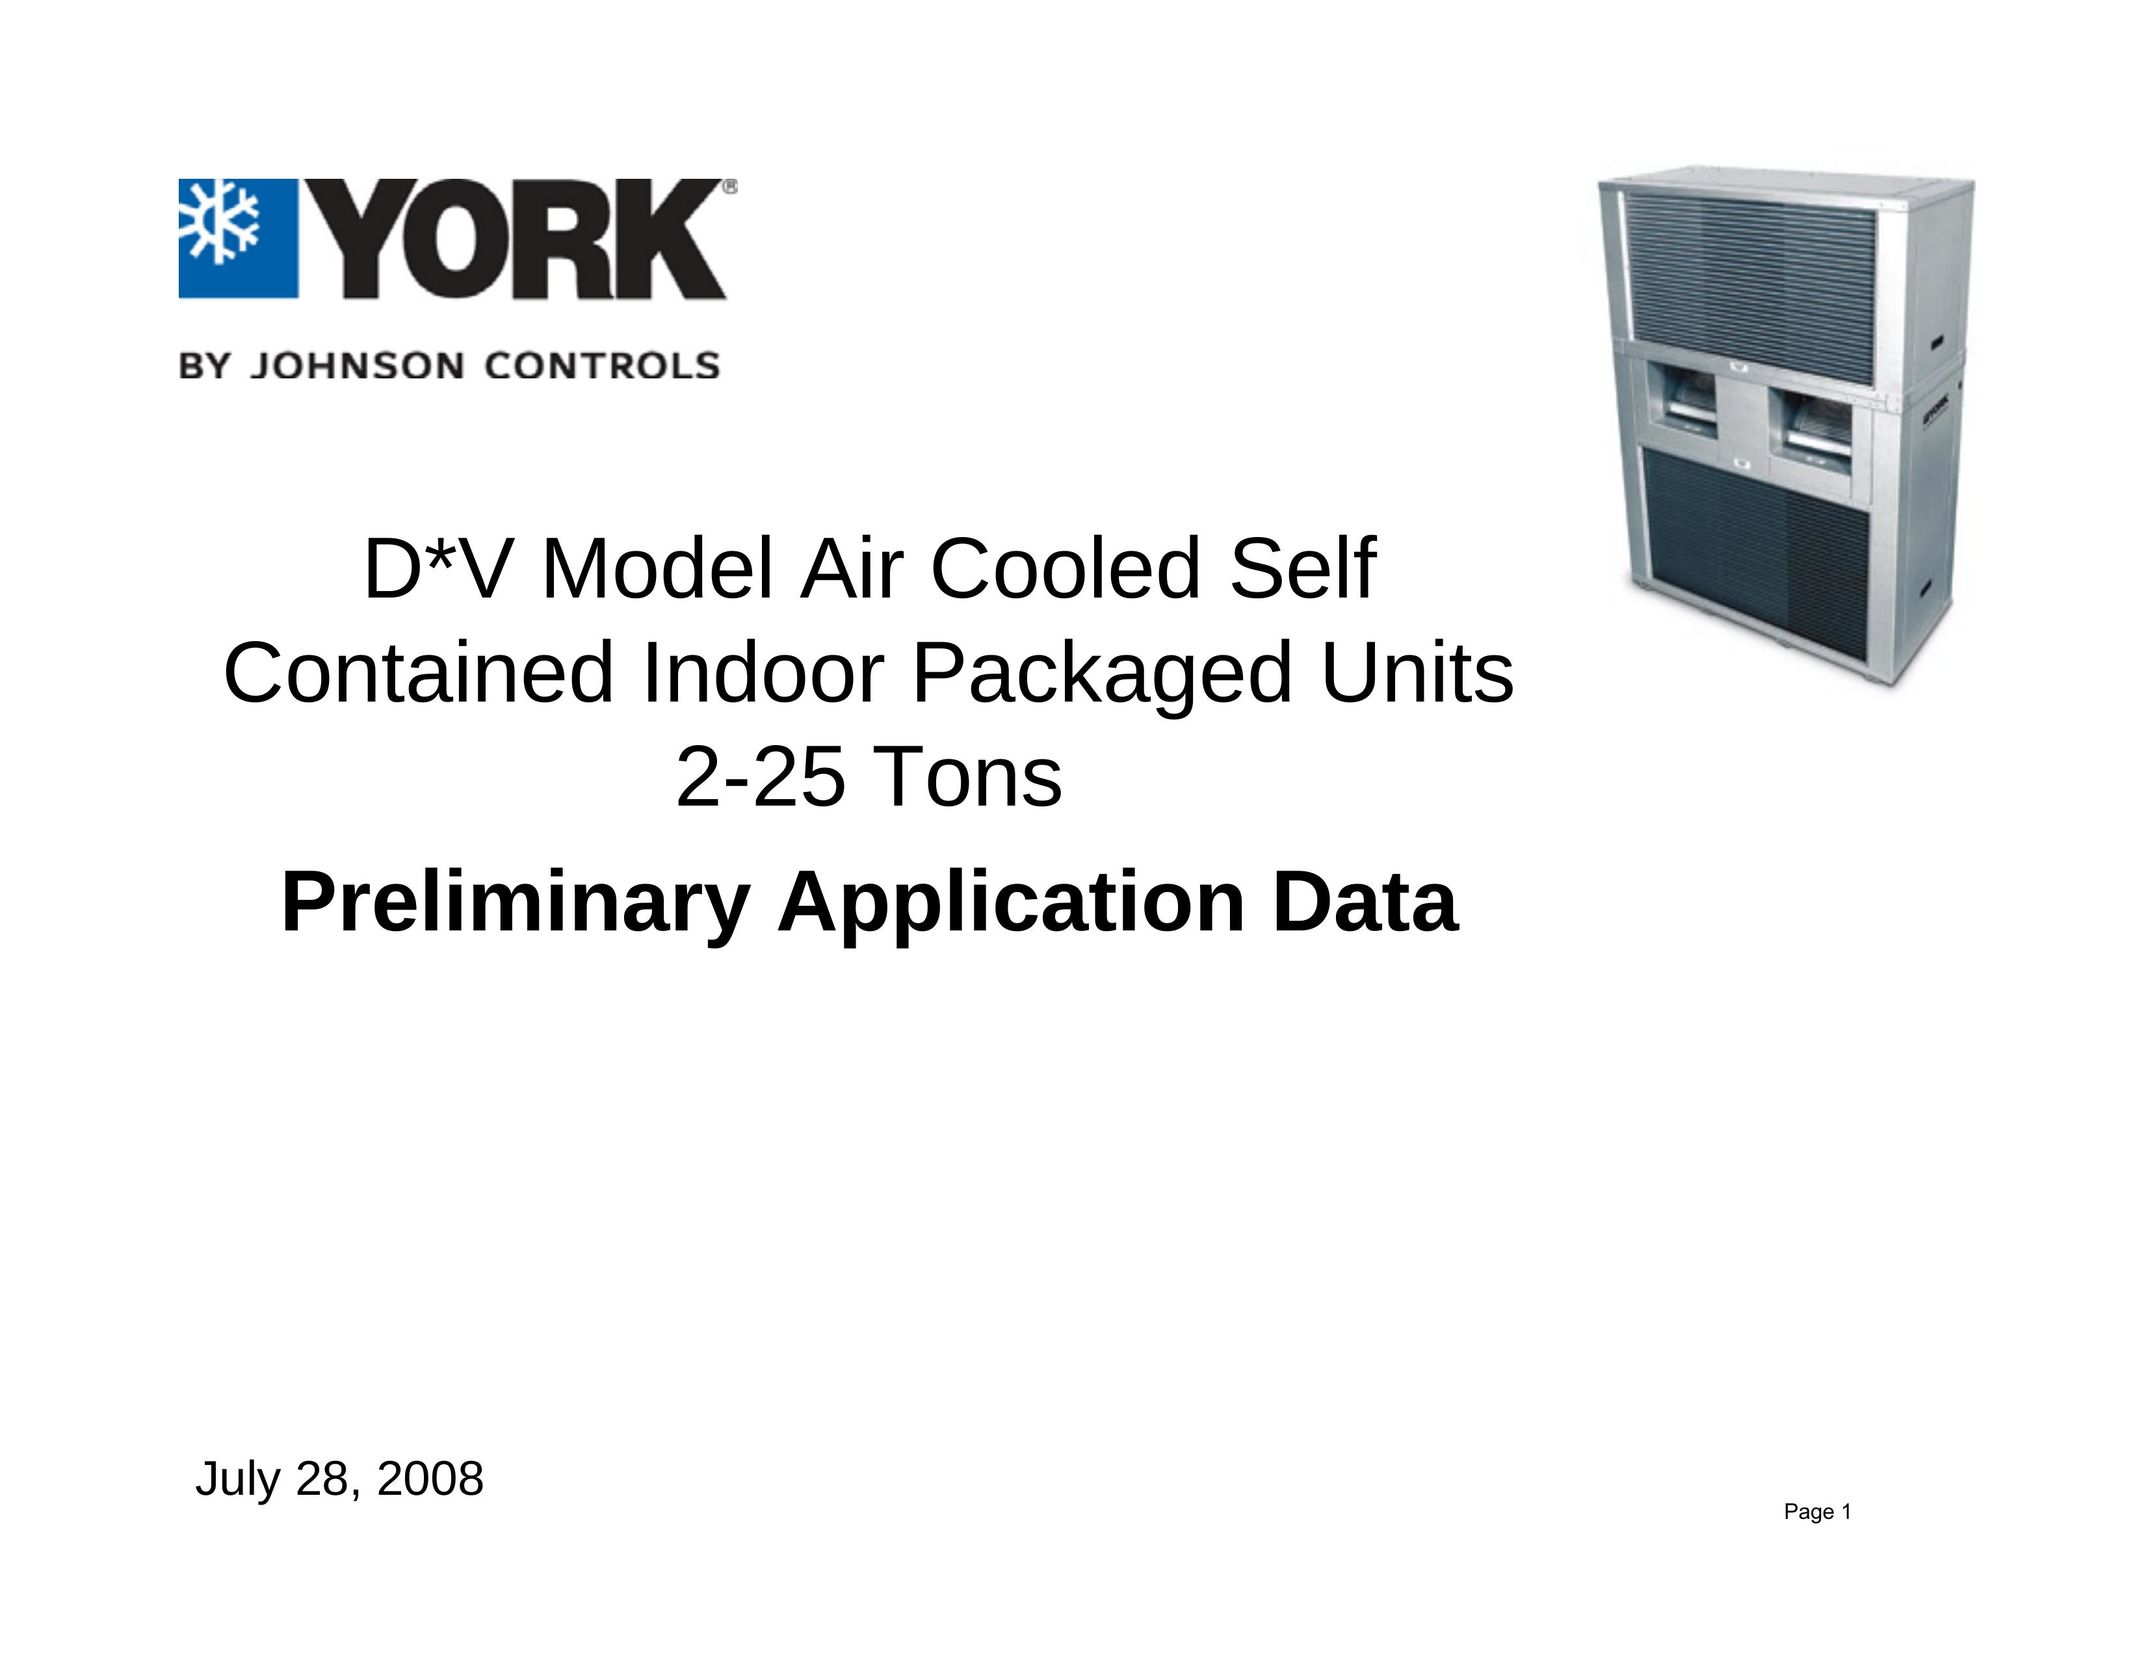 York D*V Air Conditioner User Manual